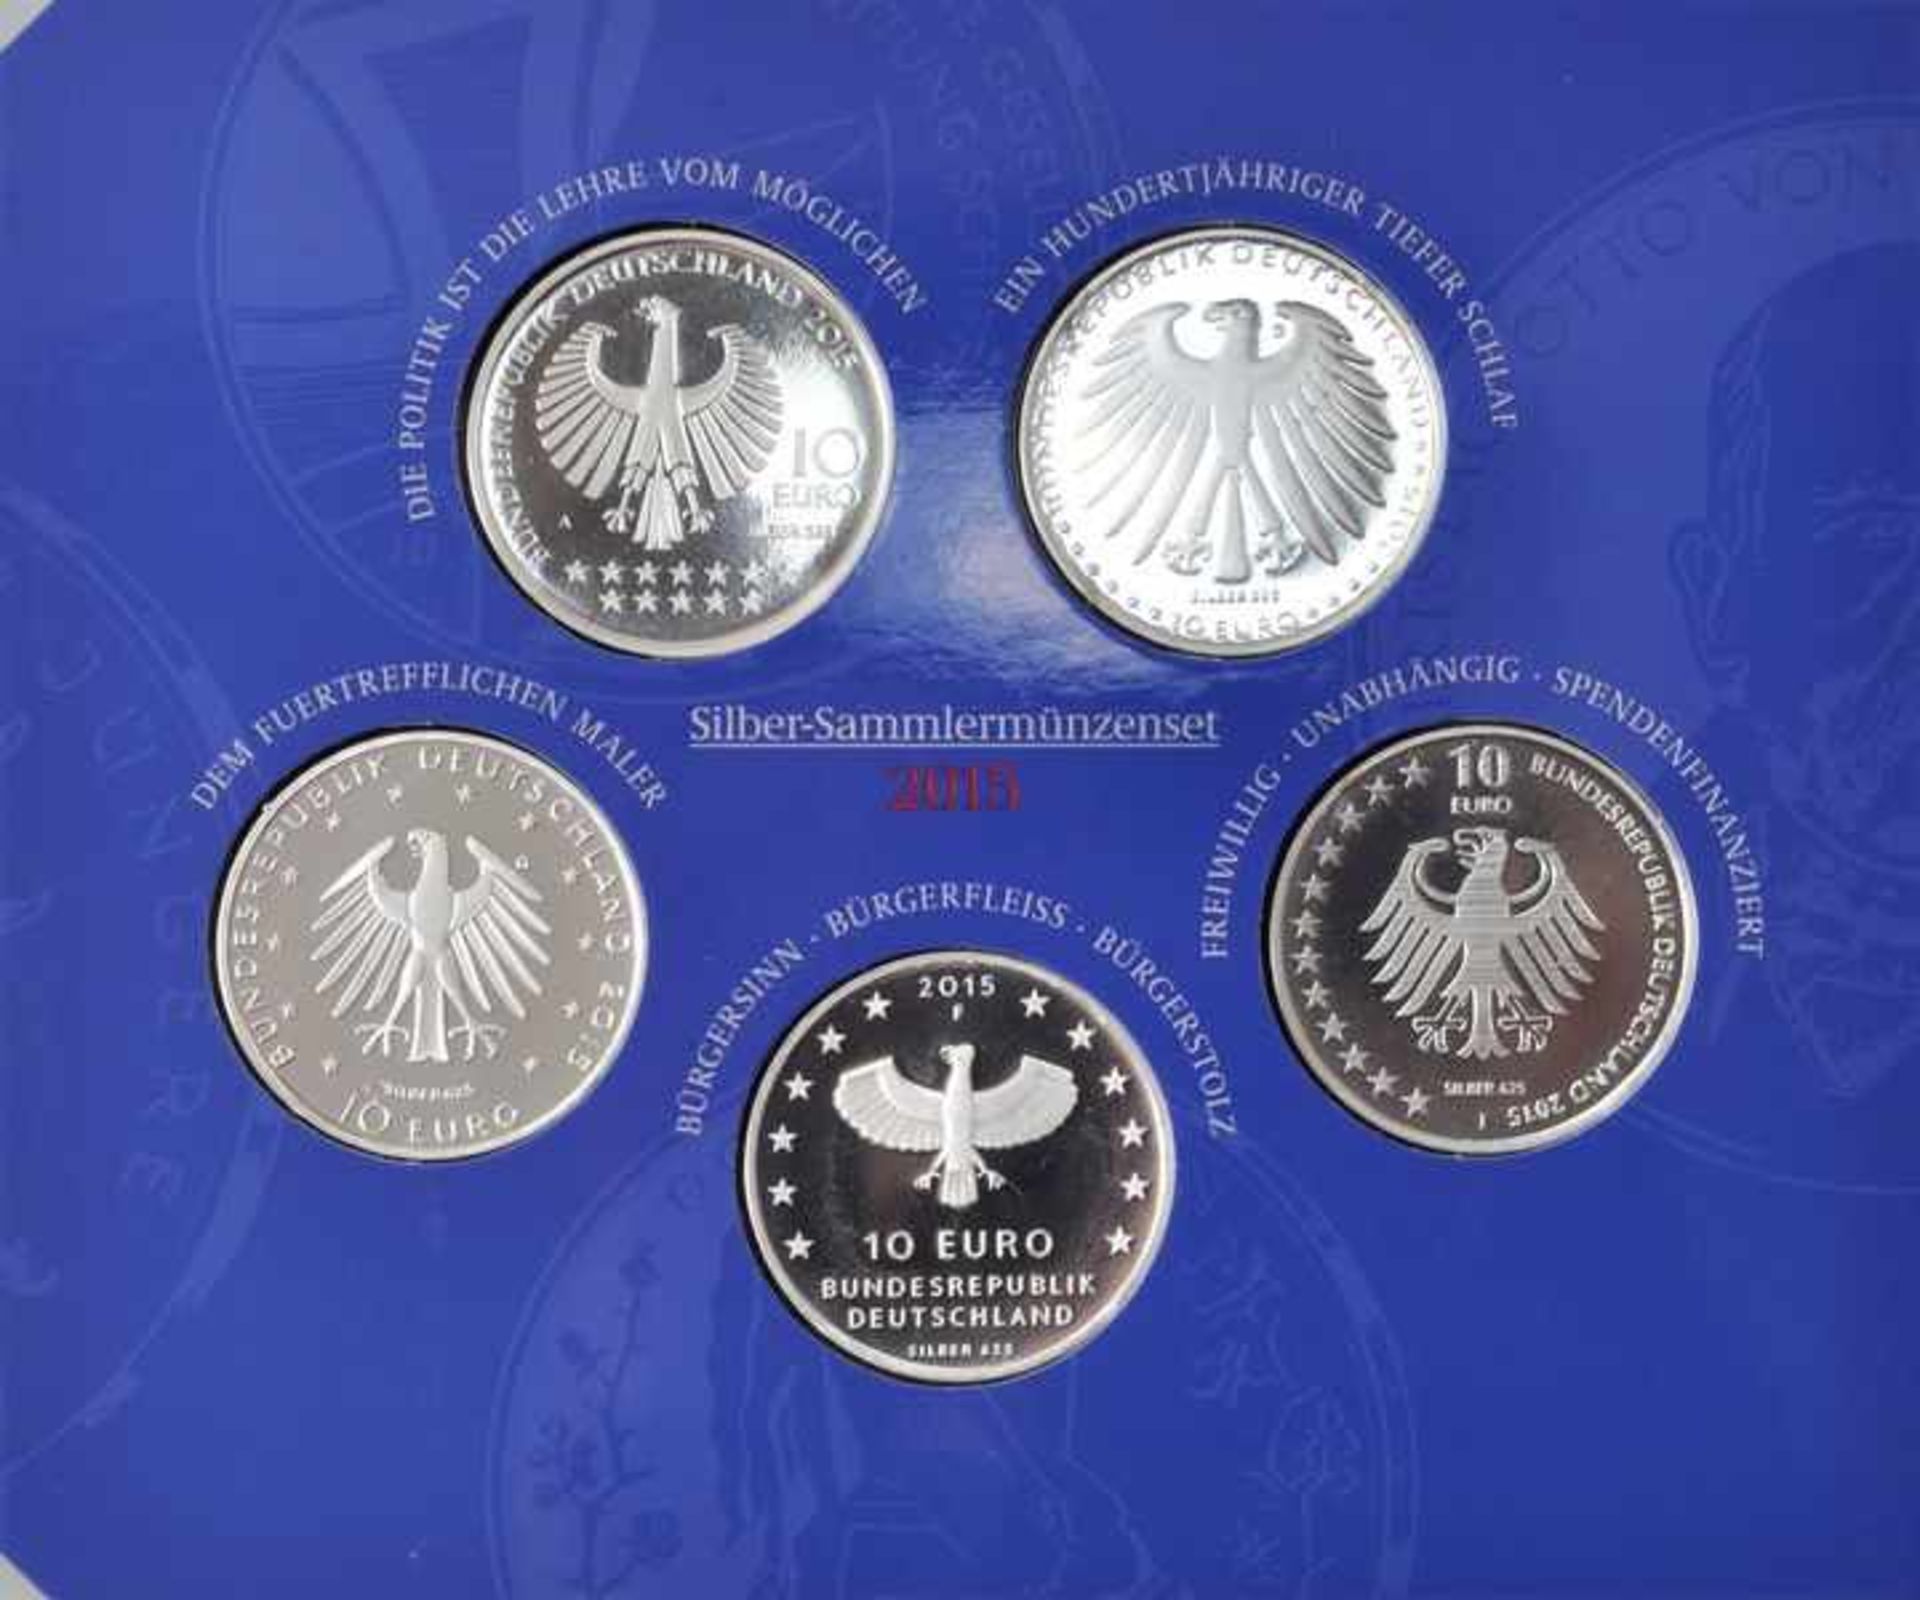 Sammlermünzenset, 5 x 10 Euro, BRD, 2015Jg. 2015, Silber 625, Spiegelglanz, A, D, G, F, J. Orig. - Bild 3 aus 3